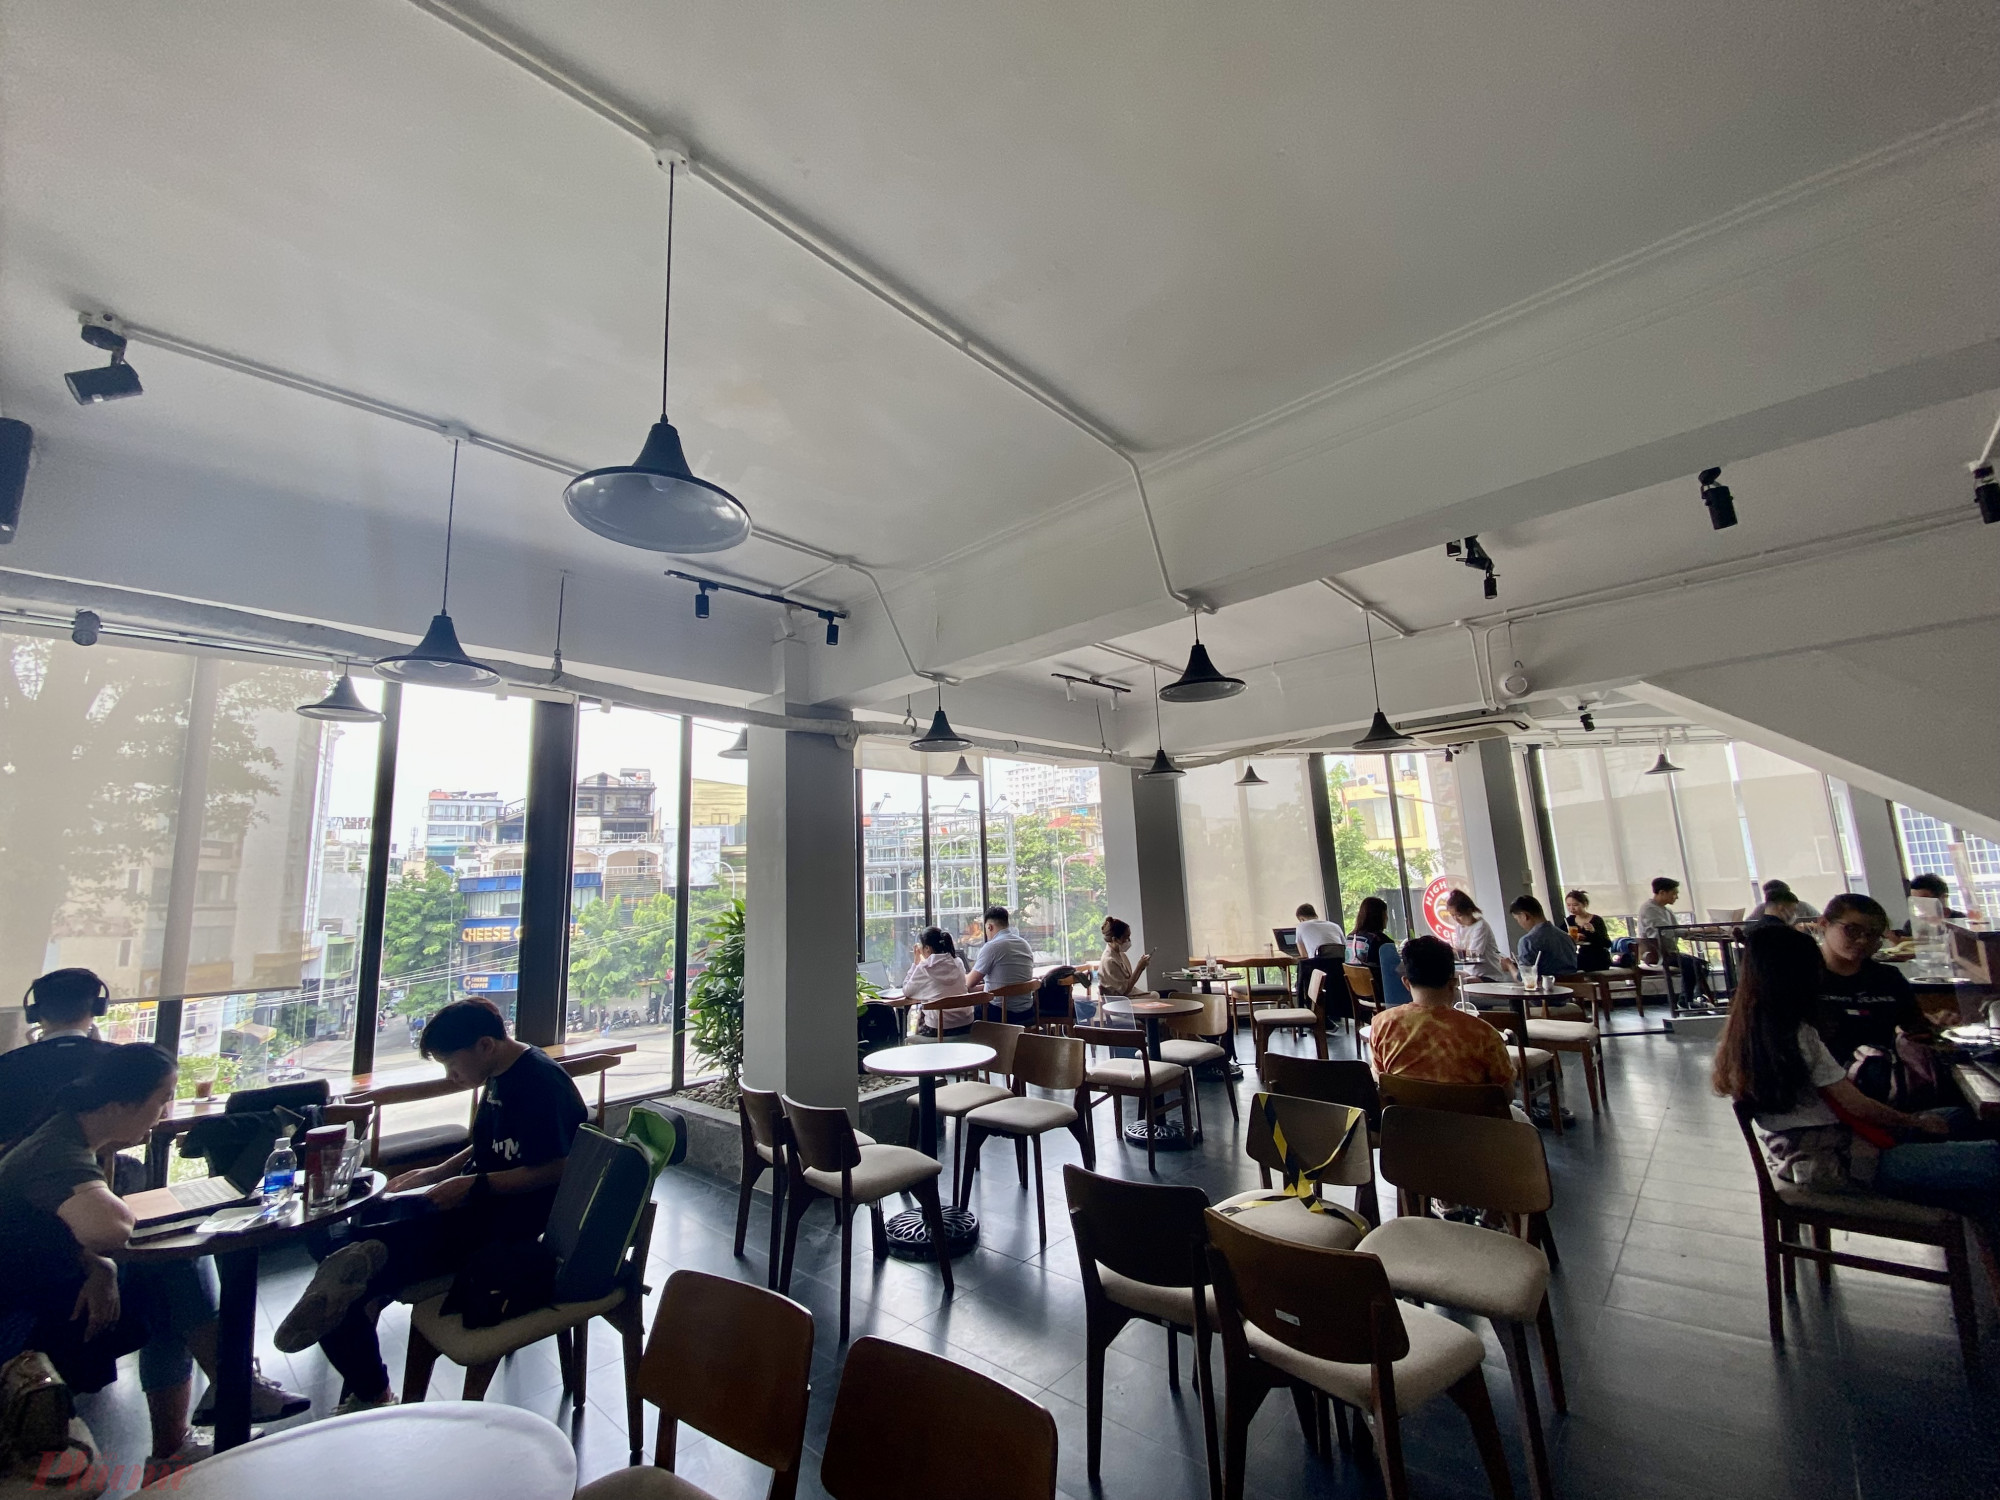 Tại một quán cà phê khác trên đường Nguyễn Công Hoang (quận Phú Nhuận) khác hàng khá đông, quán có thực hiện giãn cách giữa các vị trí bàn ngồi để tạo khoảng cách cho khách.